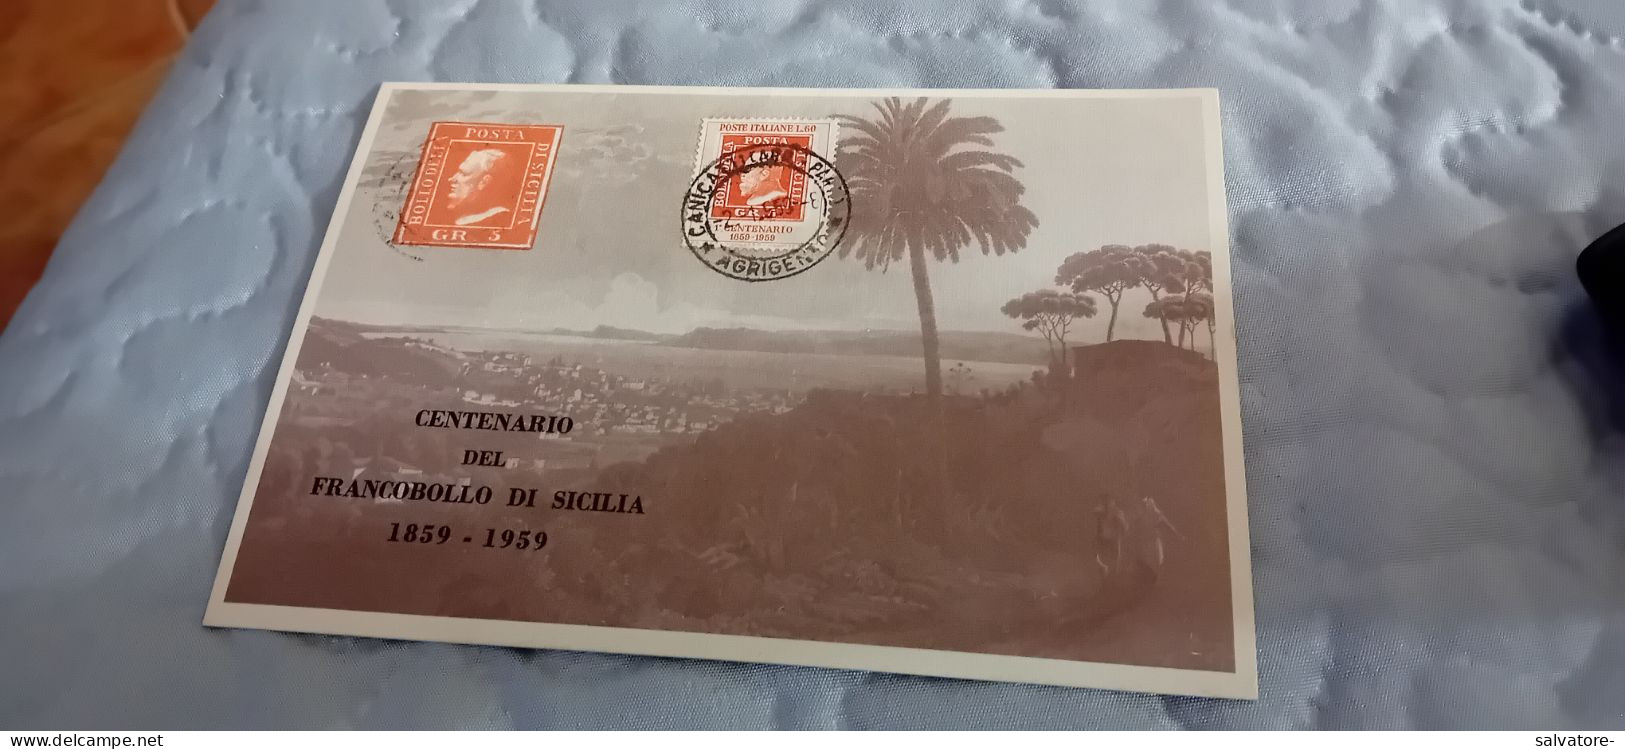 CARTOLINA CENTENARIO DEL FRANCOBOLLO DI SICILIA 1959 - Postzegels (afbeeldingen)